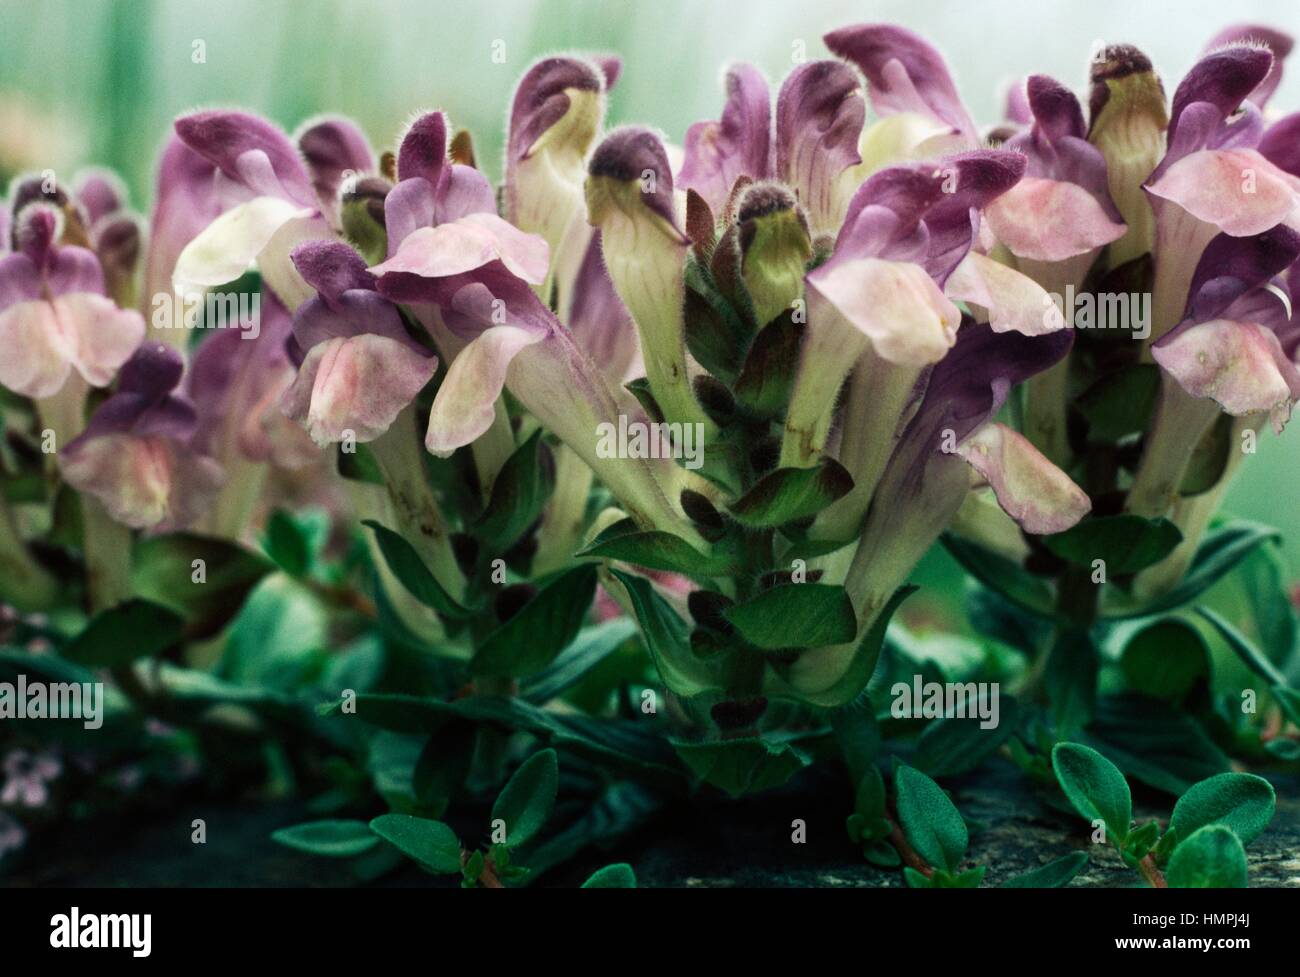 Alpine Skullcap (Scutellaria alpina), Lamiaceae. Stock Photo